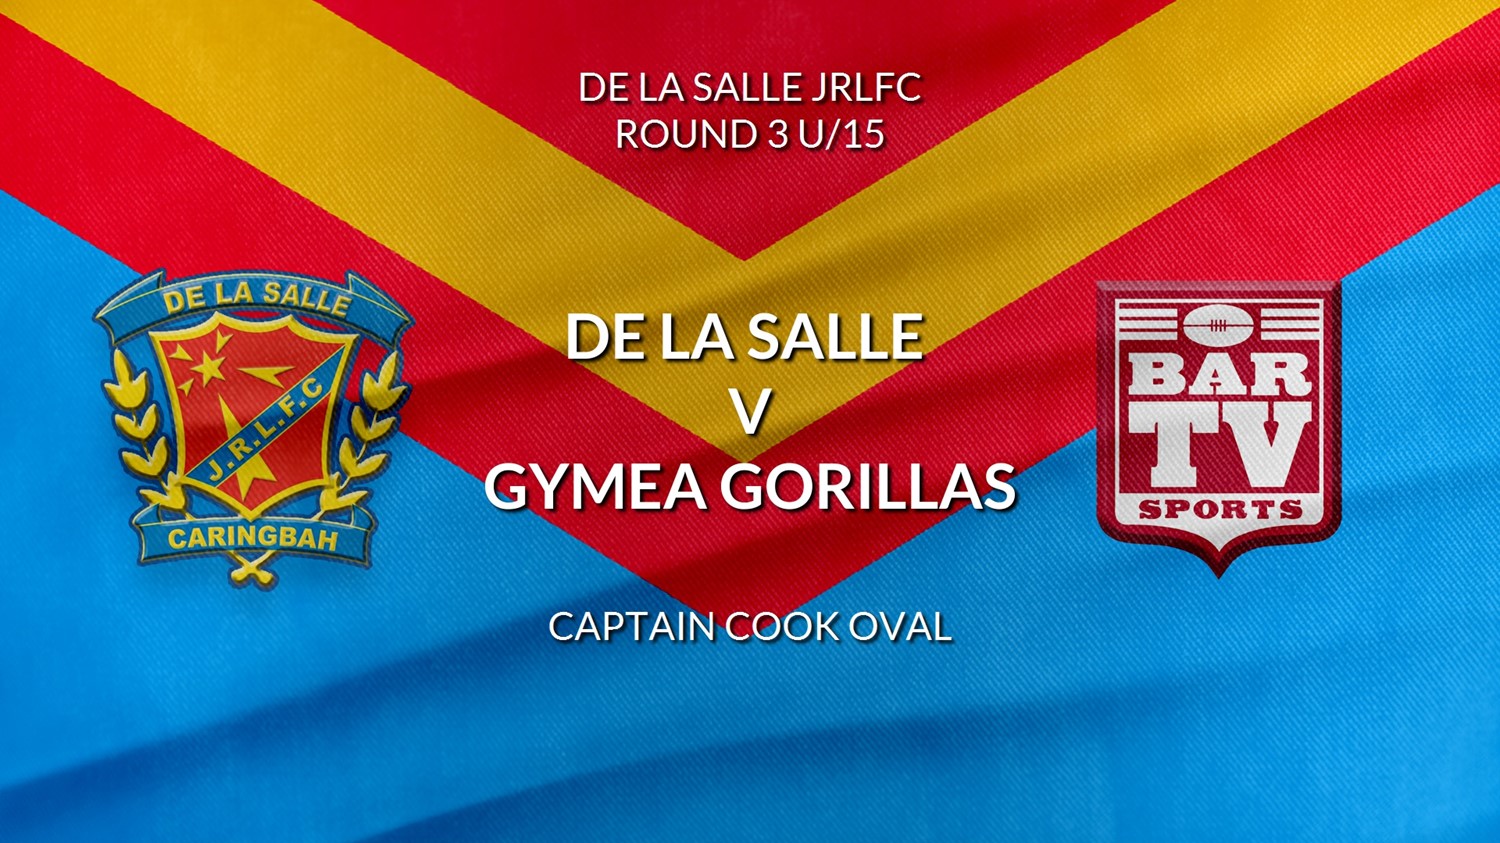 De La Salle Round 3 U/15 - De La Salle v Gymea Gorillas Slate Image